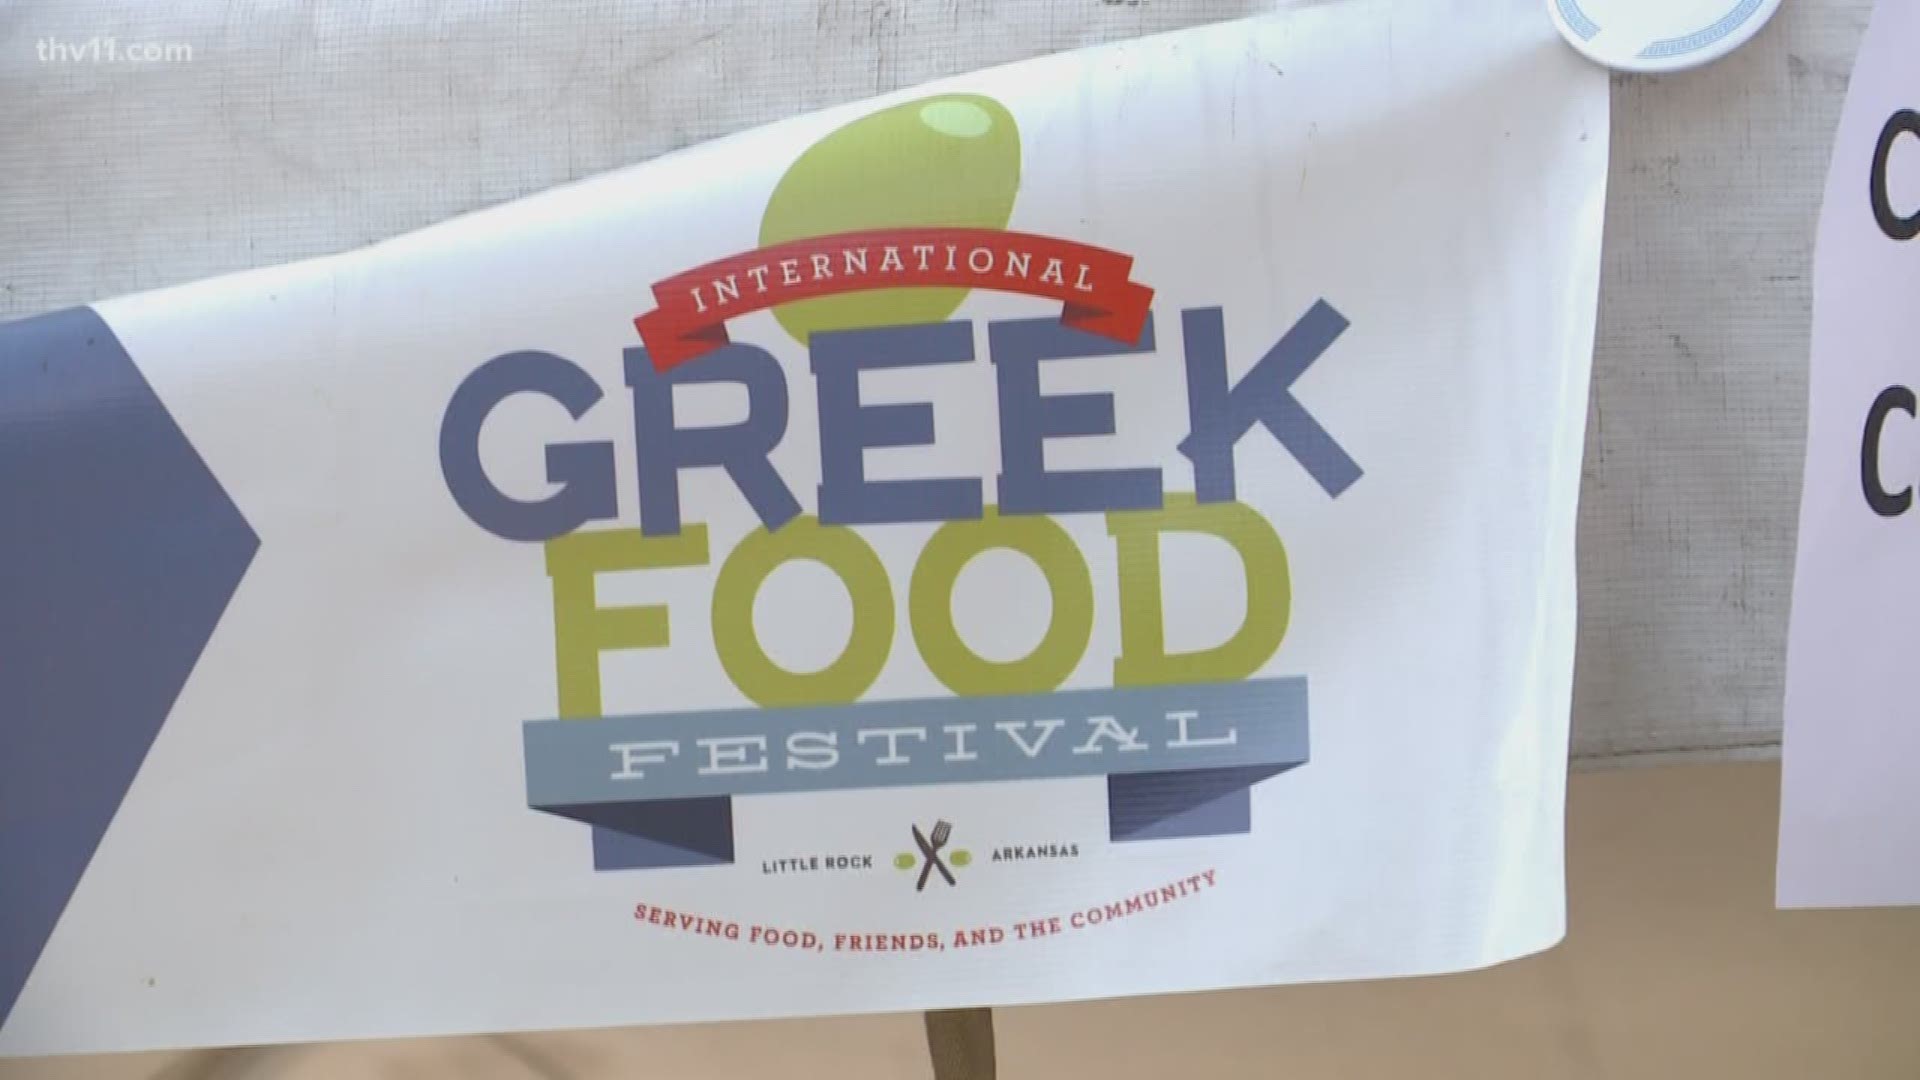 The International Greek Food Festival is officially underway in West Little Rock.